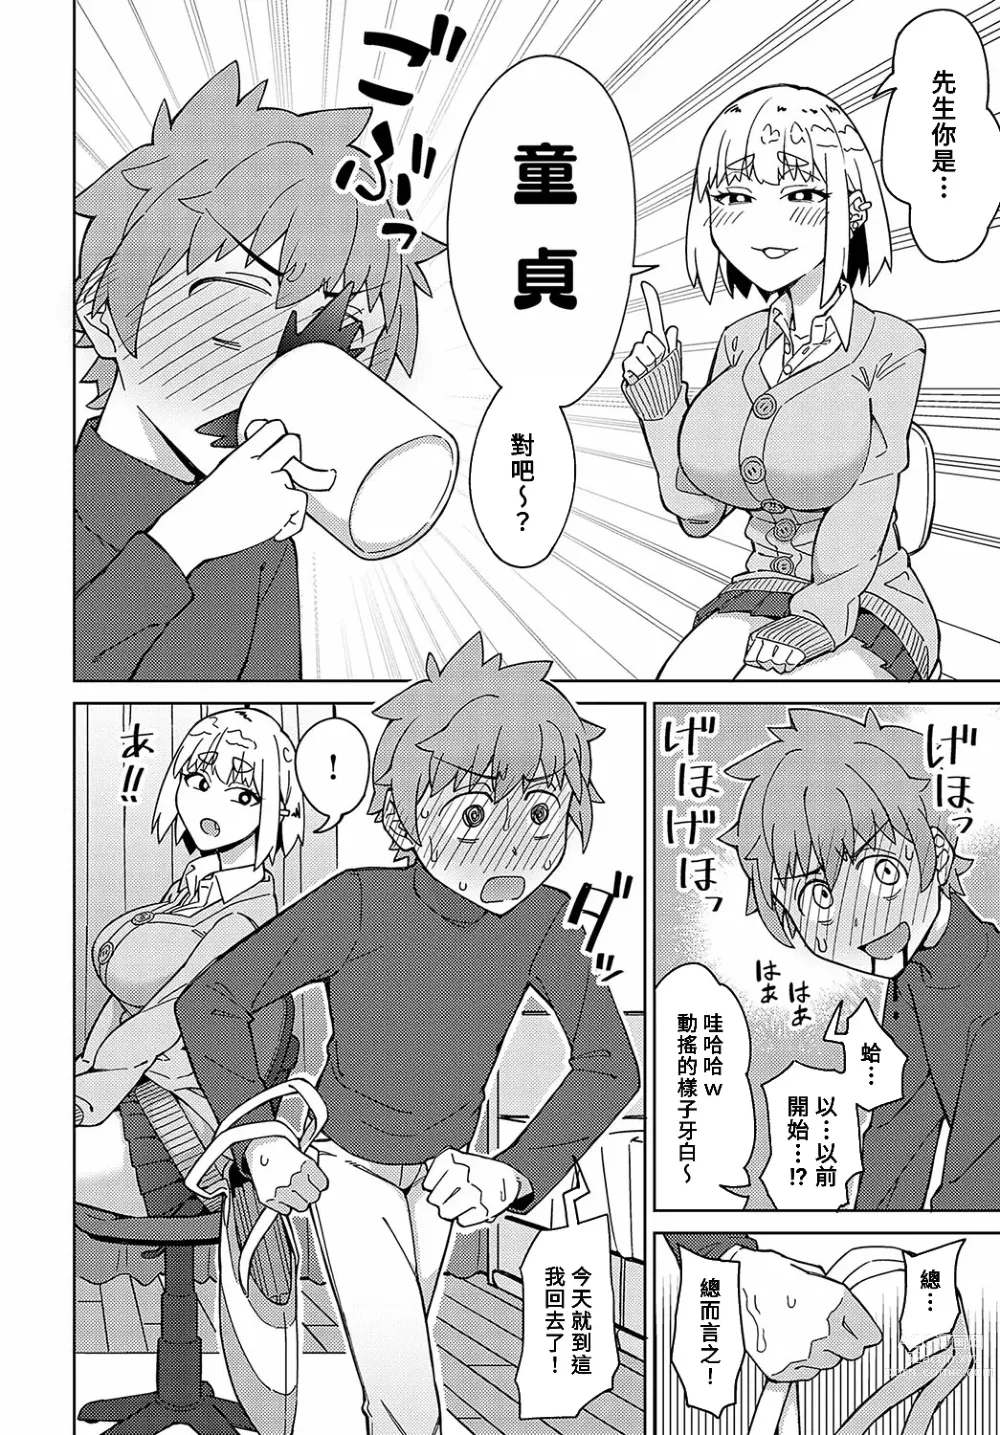 Page 2 of manga Sensei na no ni Makechau no